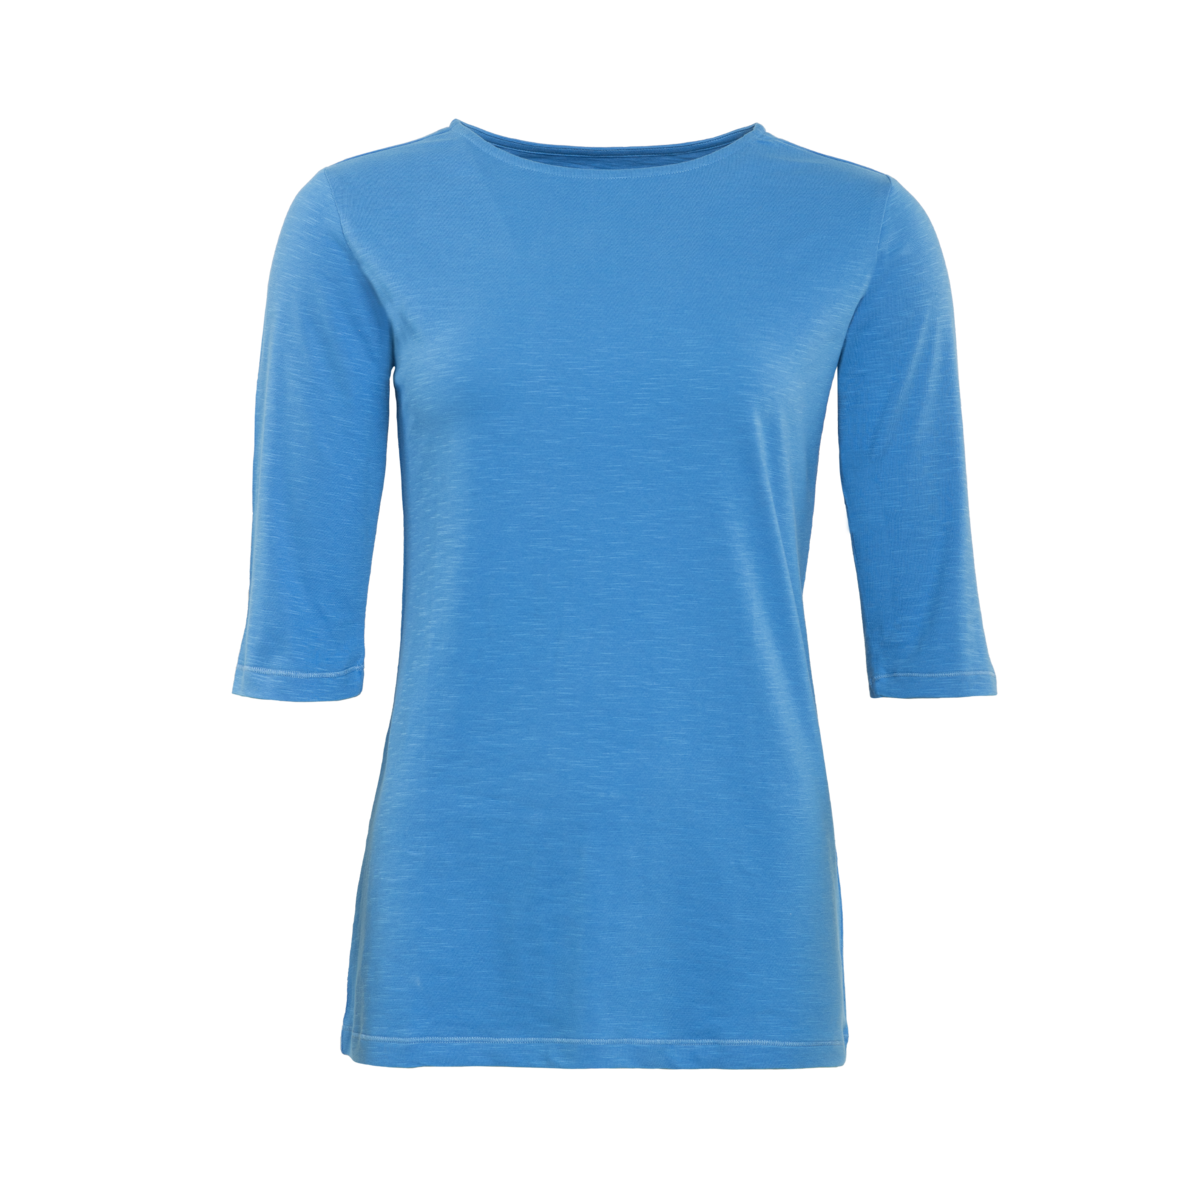 Bleu T-shirt, CHLOPEA